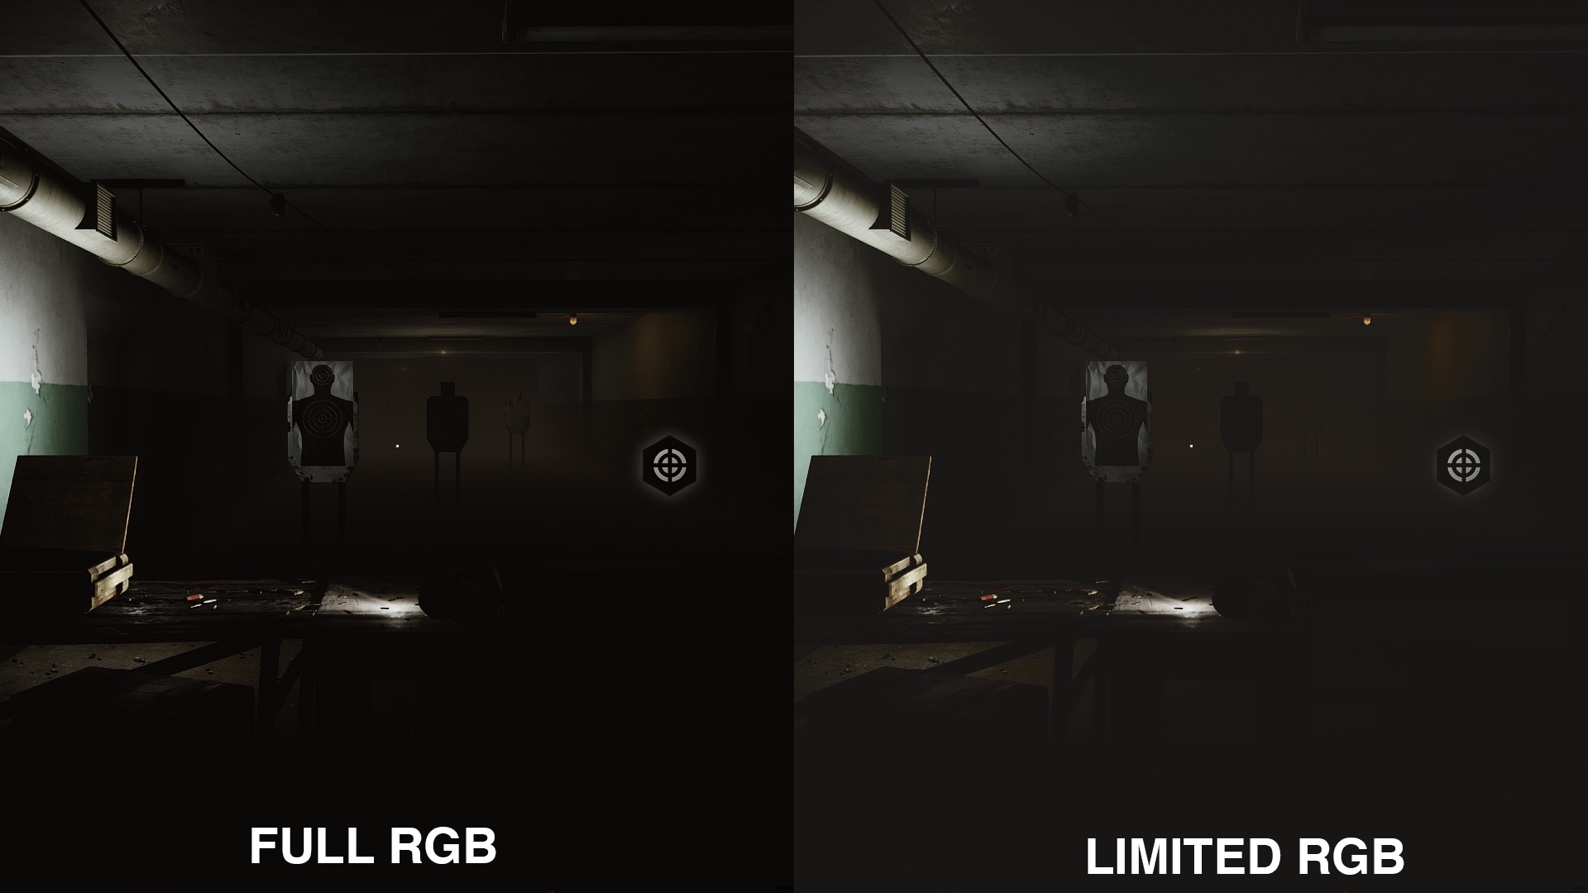 W ciemnych pomieszczeniach gry Escape from Tarkov ograniczona paleta RGB oznacza, że można nie dostrzec wroga. - Podłączasz monitor przez HDMI? To może być błąd! - dokument - 2021-08-03